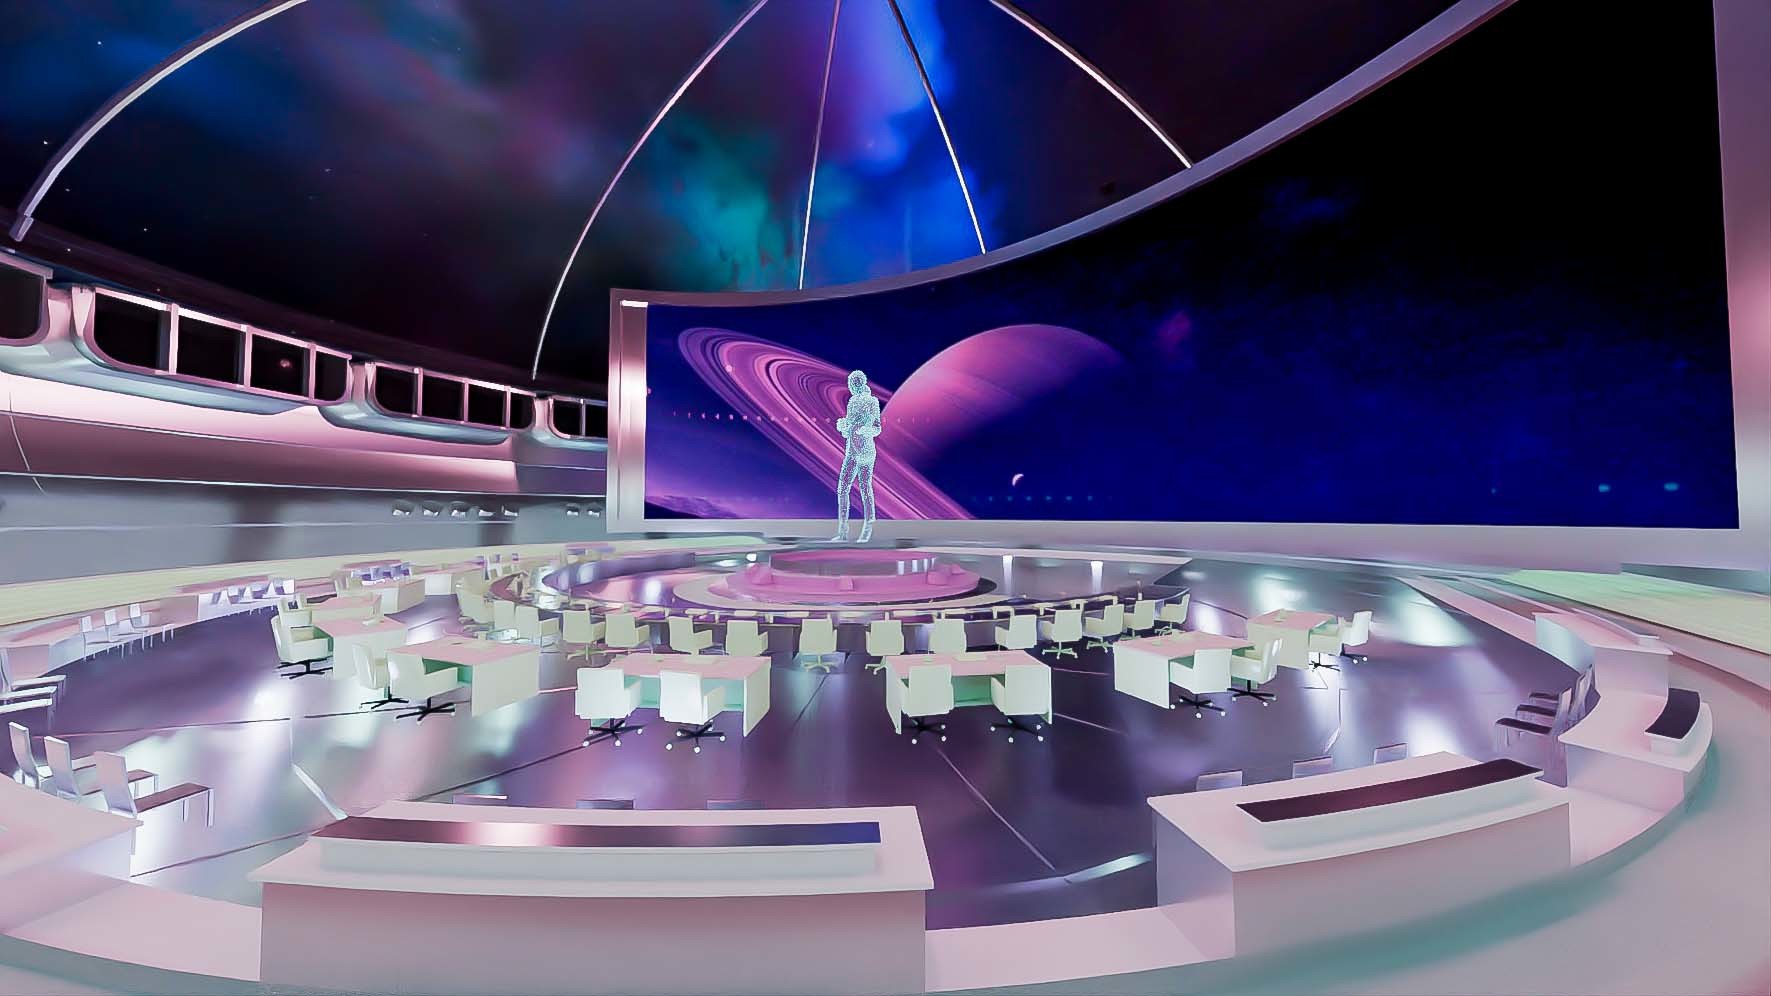 这是一张展示未来风格会议室的图片，中心有全息投影，周围摆放着桌椅，背景是太空主题，整体色彩科幻感强。